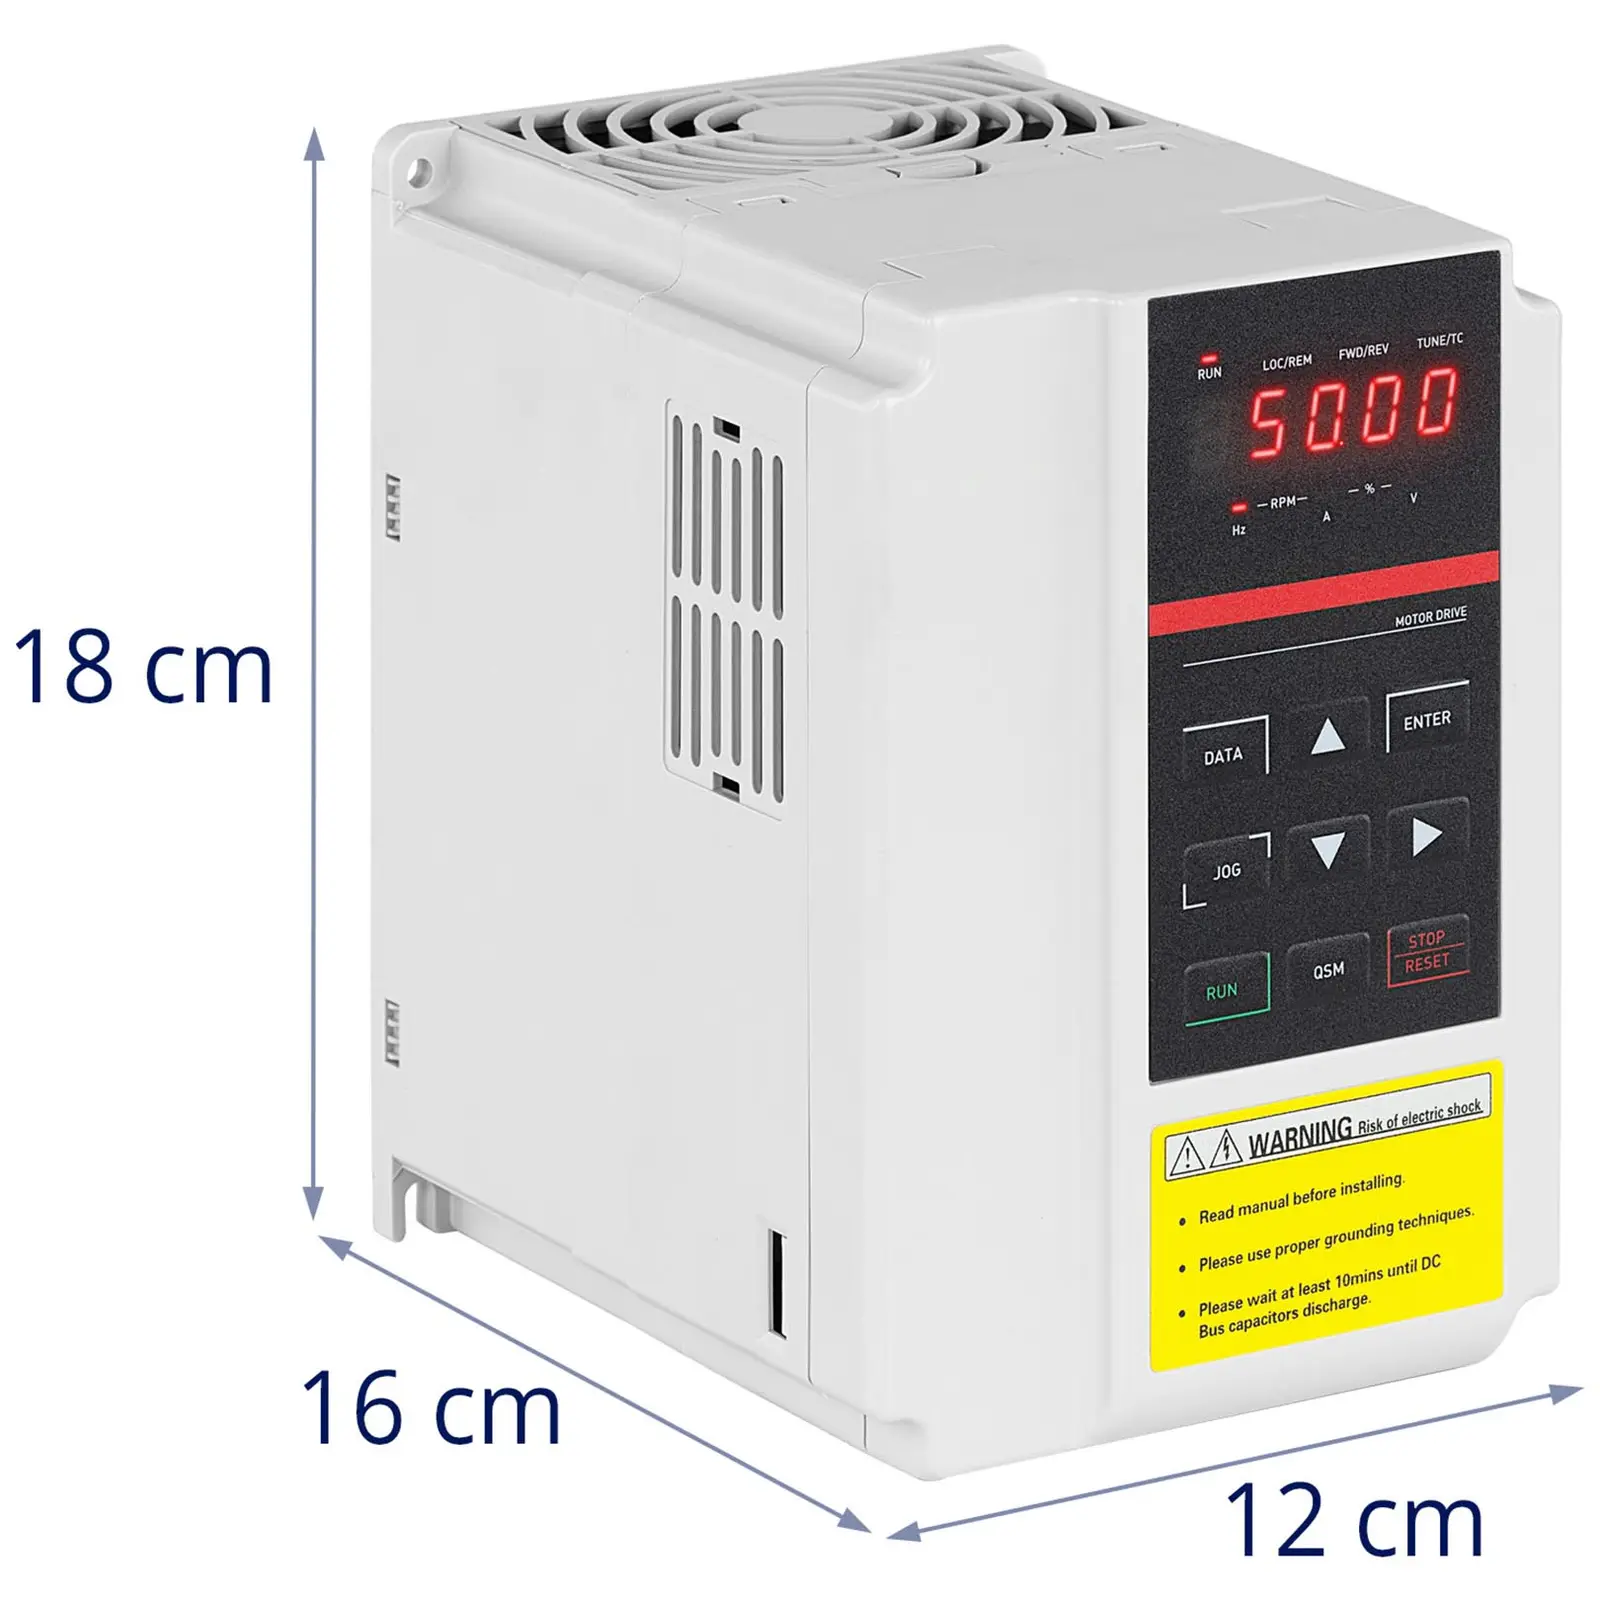 Frekvensomformer - 0,75 kW / 1 hk - 380 V - 50-60 Hz - LED